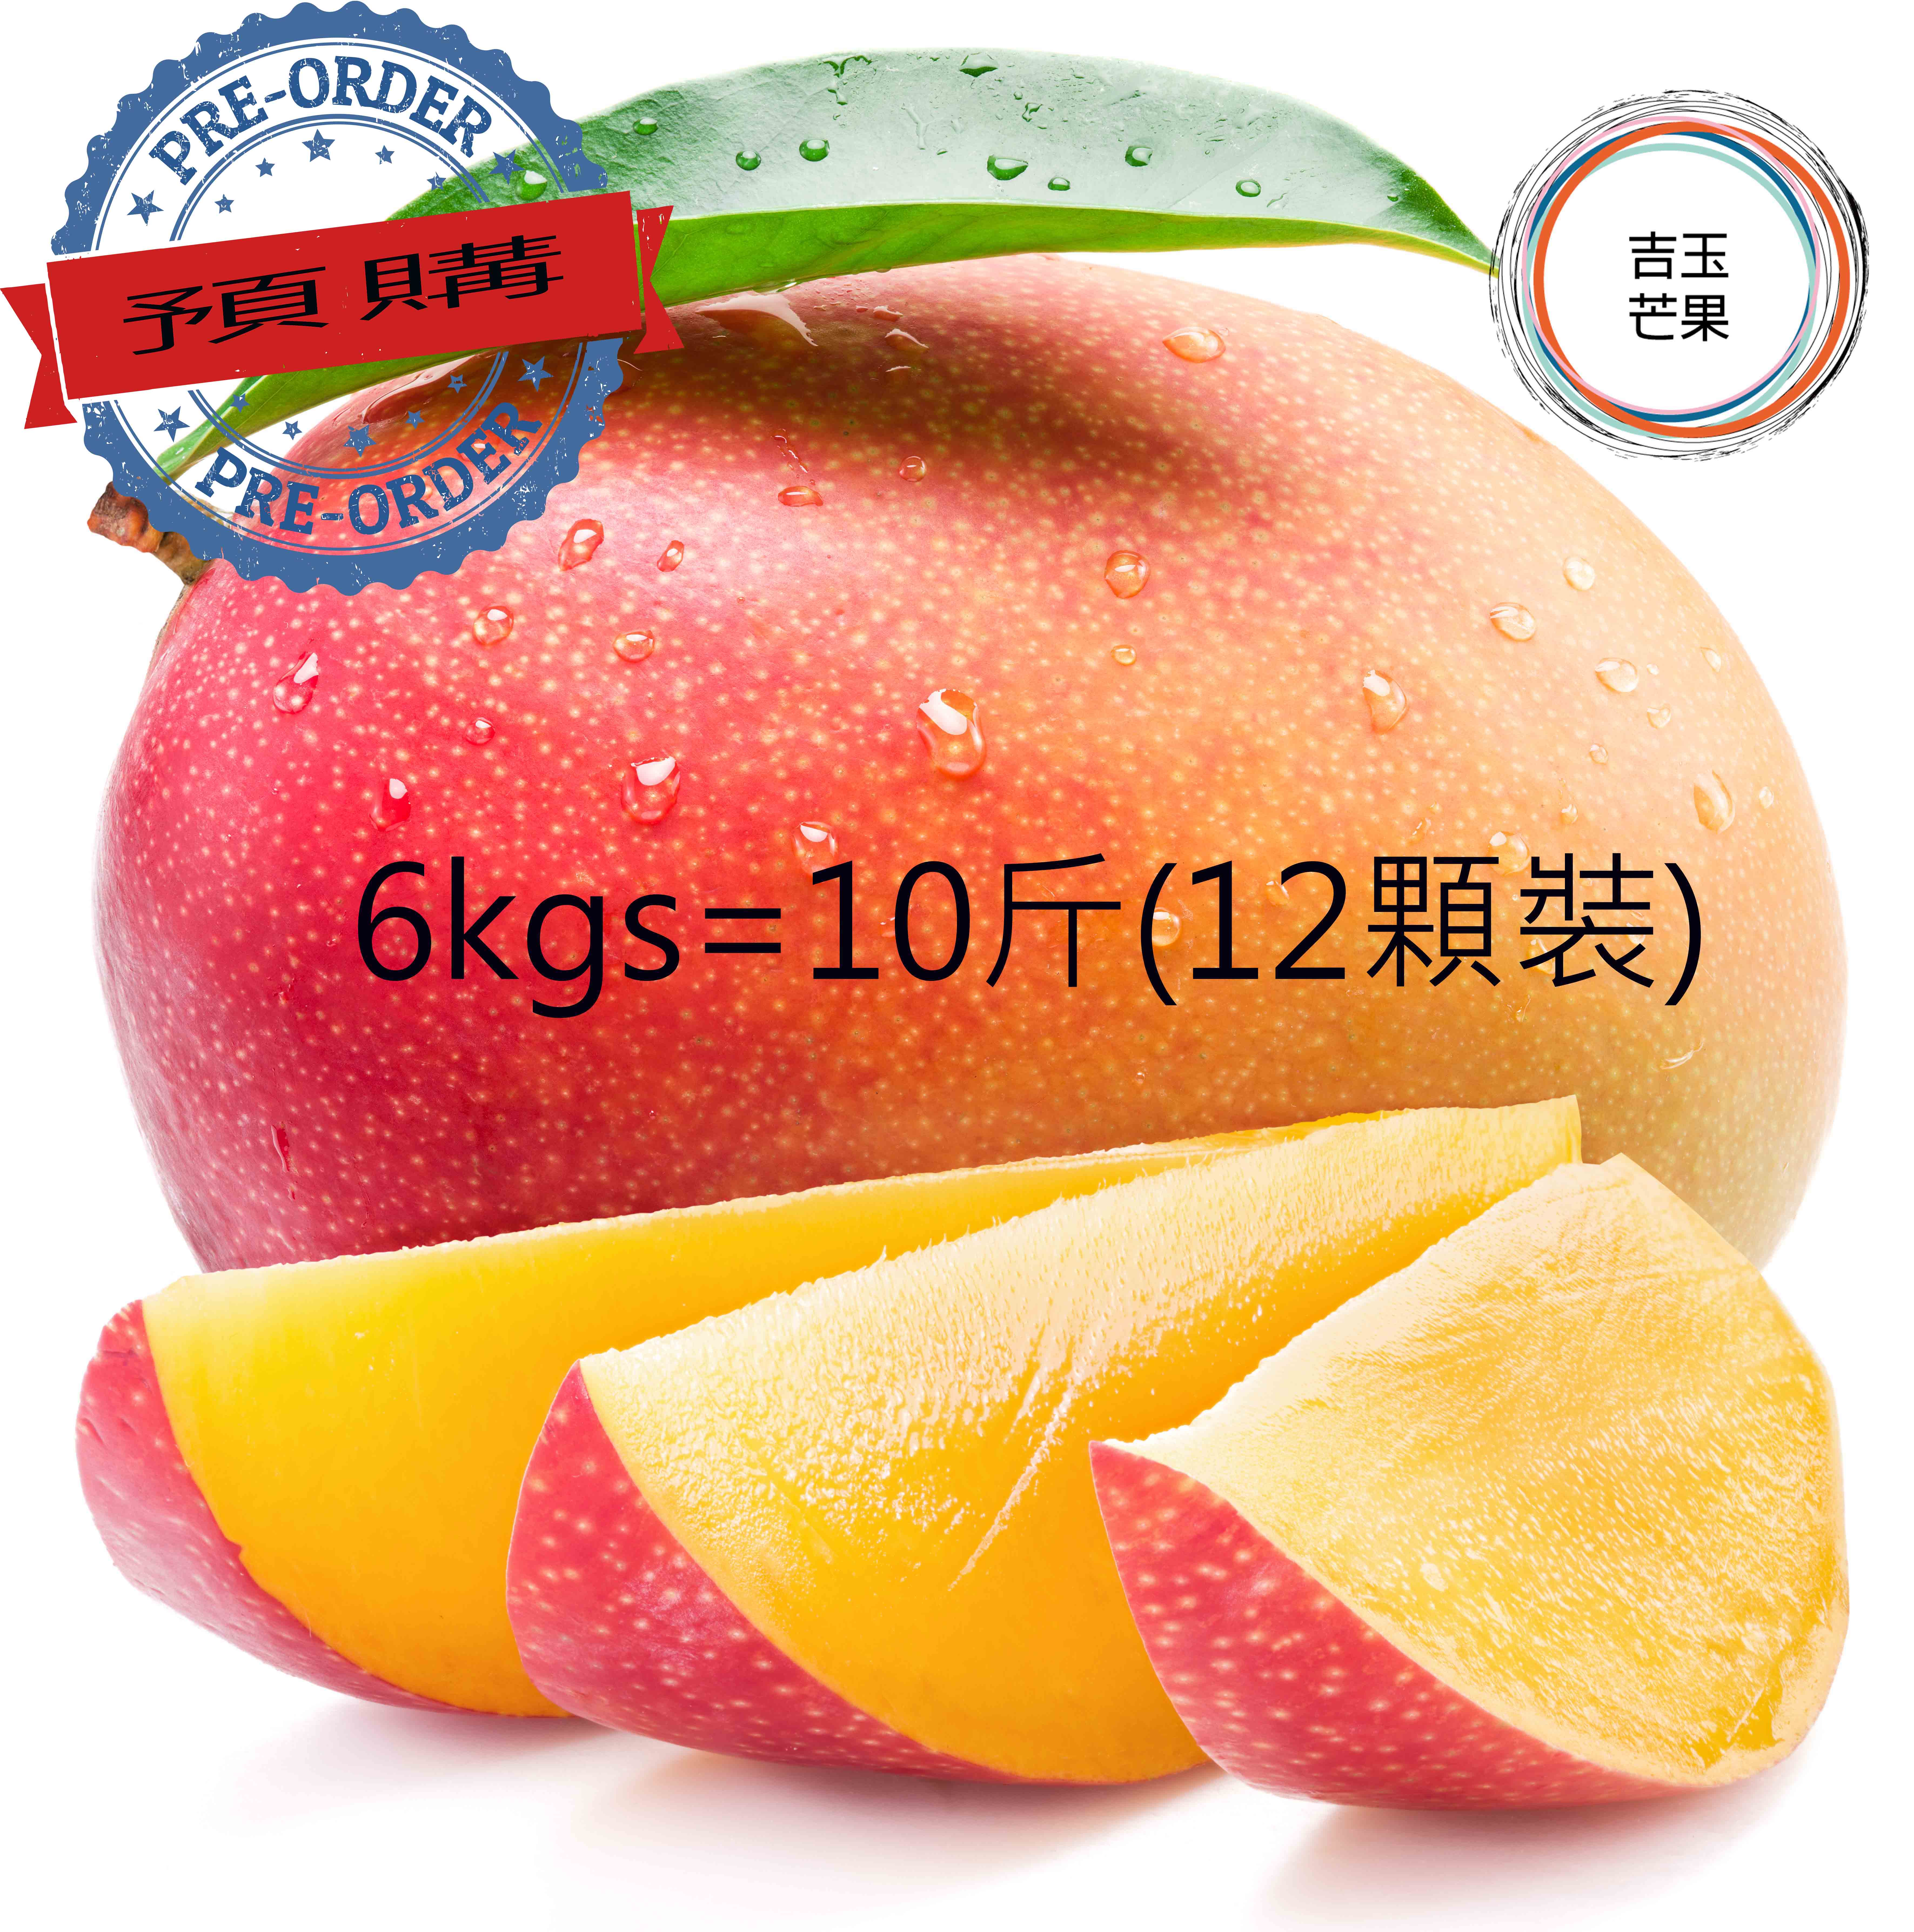 屏東枋山愛文芒果果 外銷日本產地 吉園圃認證 マンゴー mango [ 預購免運 ](10斤 / 12 顆裝)